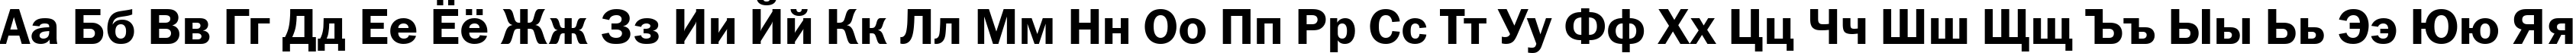 Пример написания русского алфавита шрифтом font168